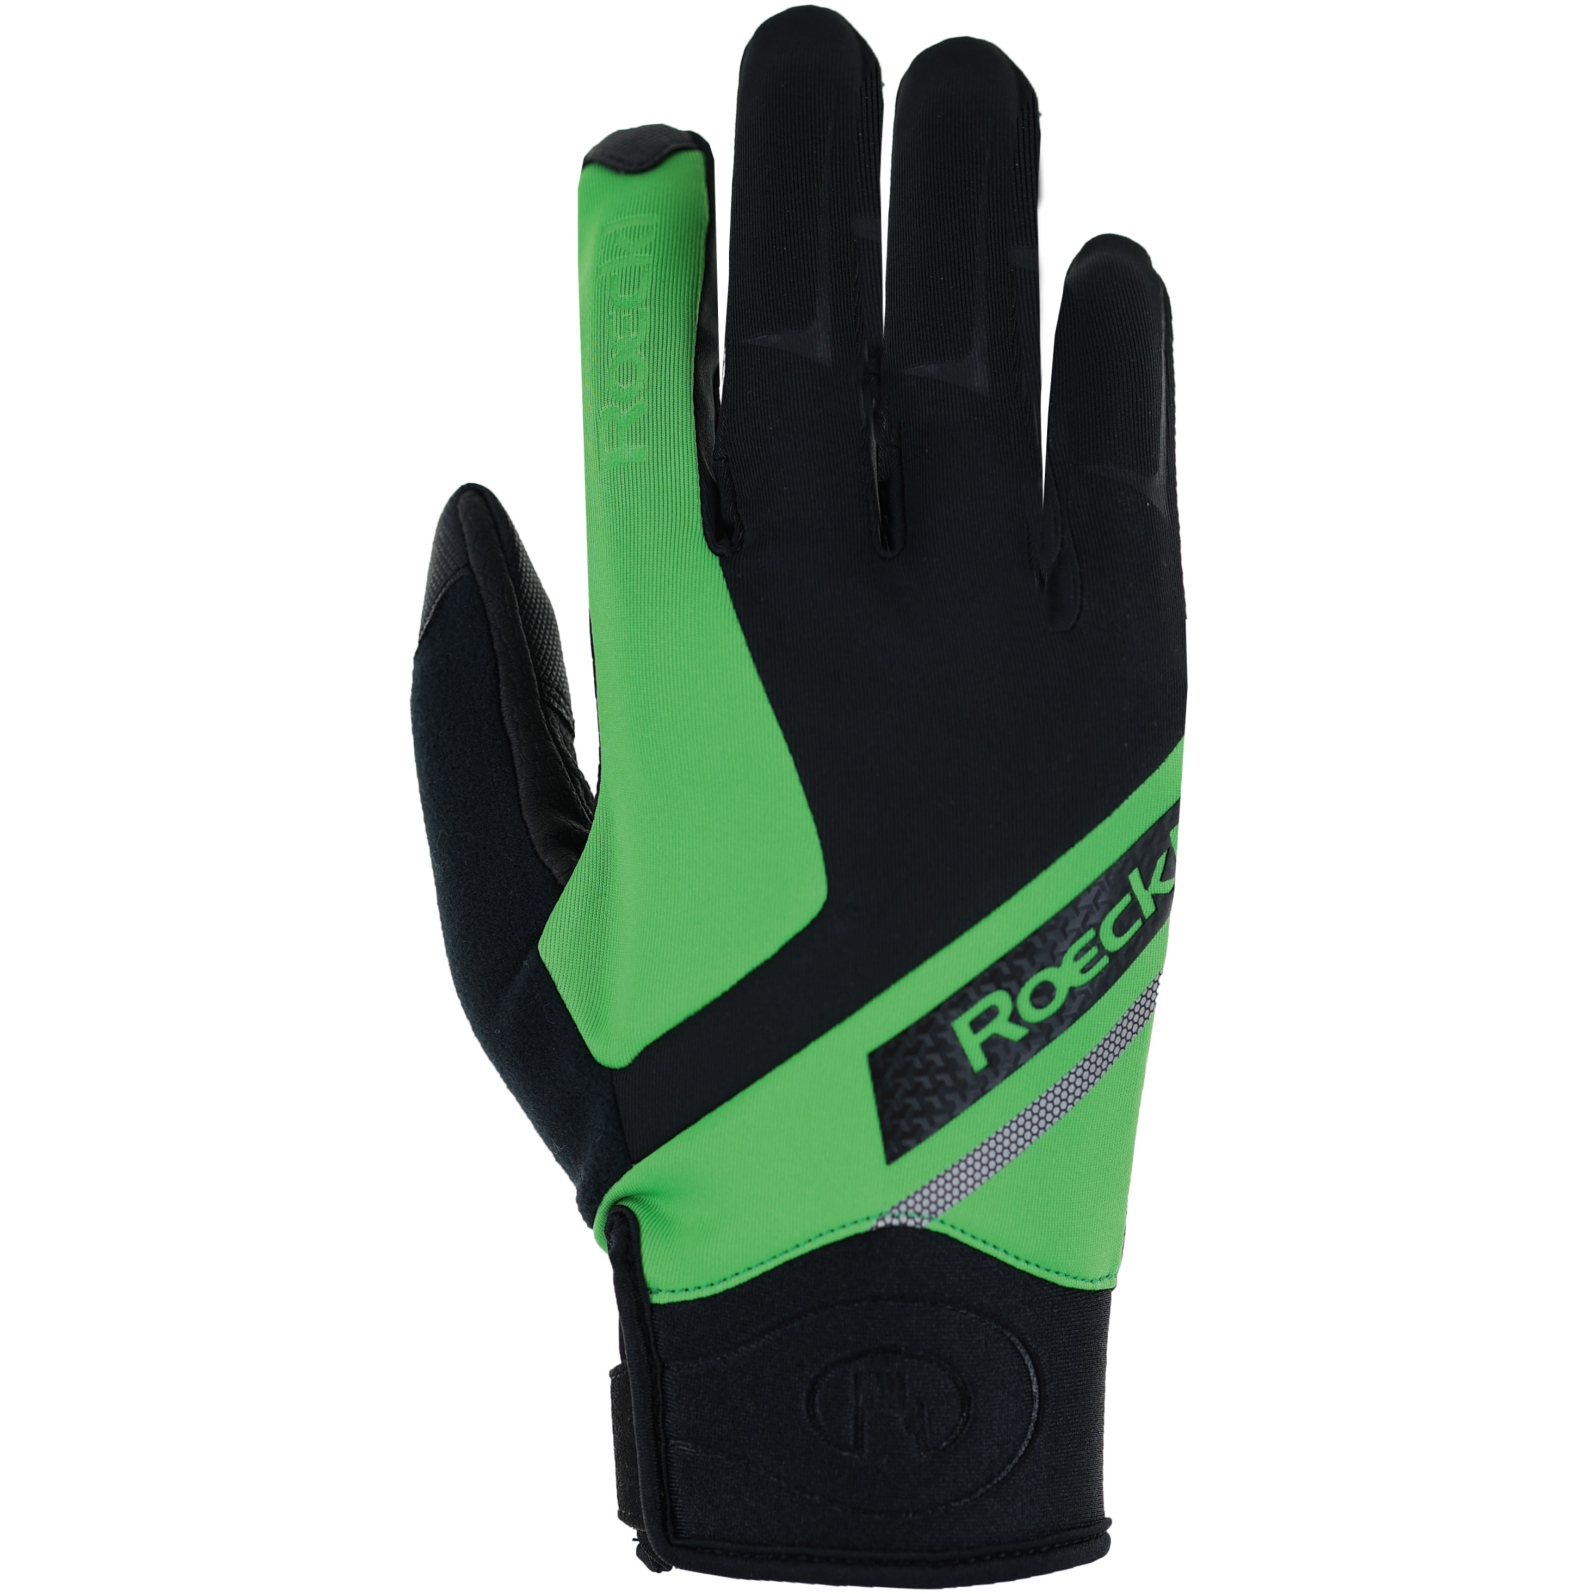 Produktbild von Roeckl Sports Lidhult Winterhandschuhe - black/classic green 9020